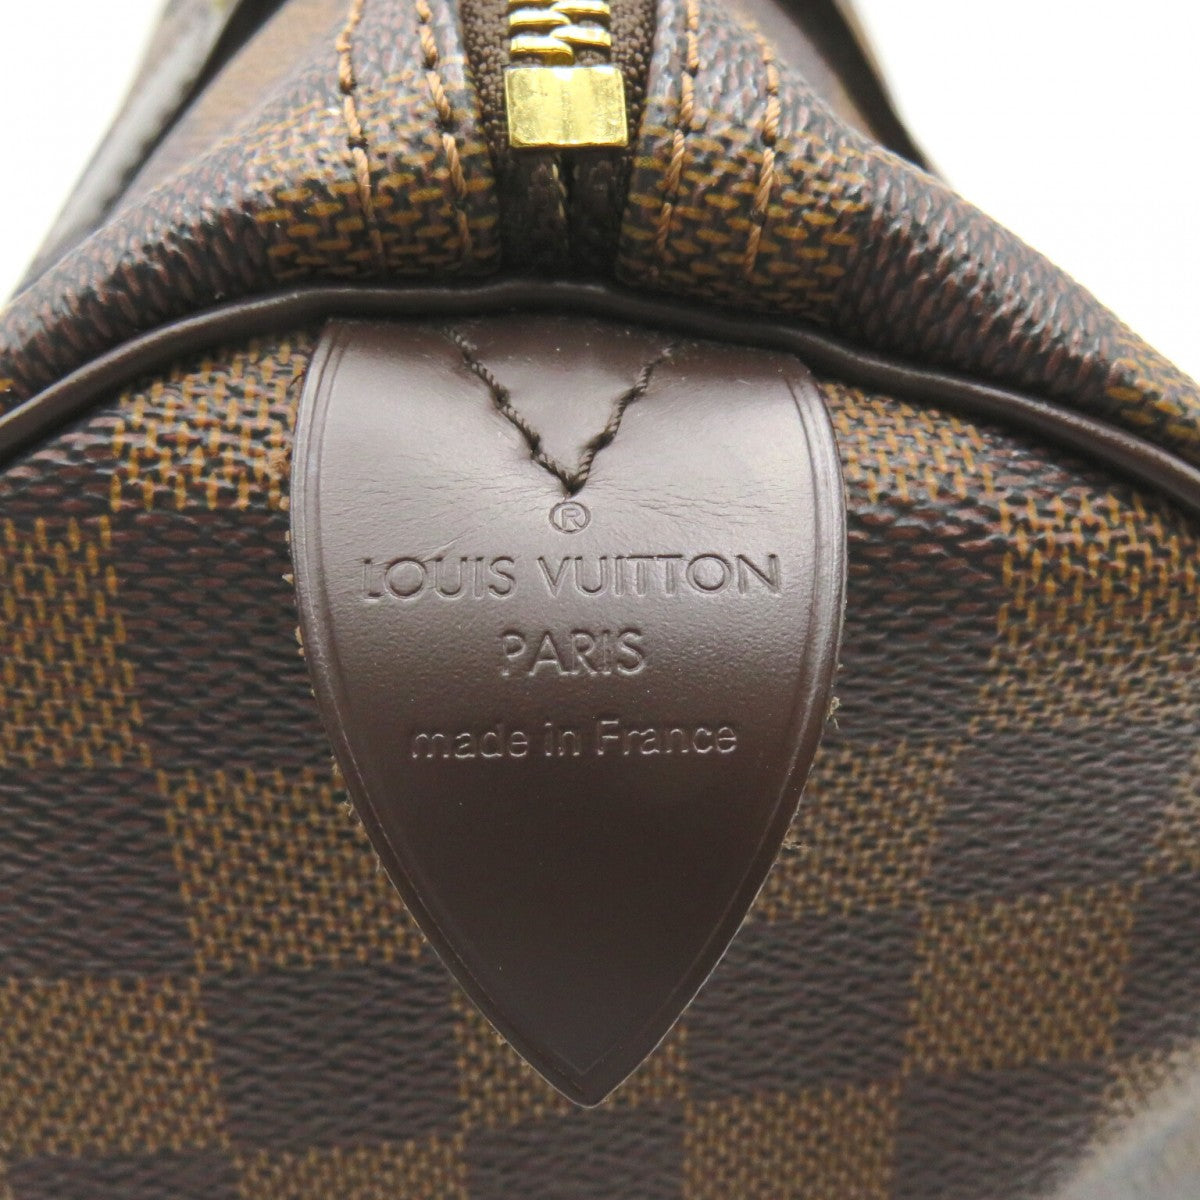 Louis Vuitton Damier Ebene Canvas Speedy 30 N41531  Louis vuitton,  Fashion, Louis vuitton handbags outlet